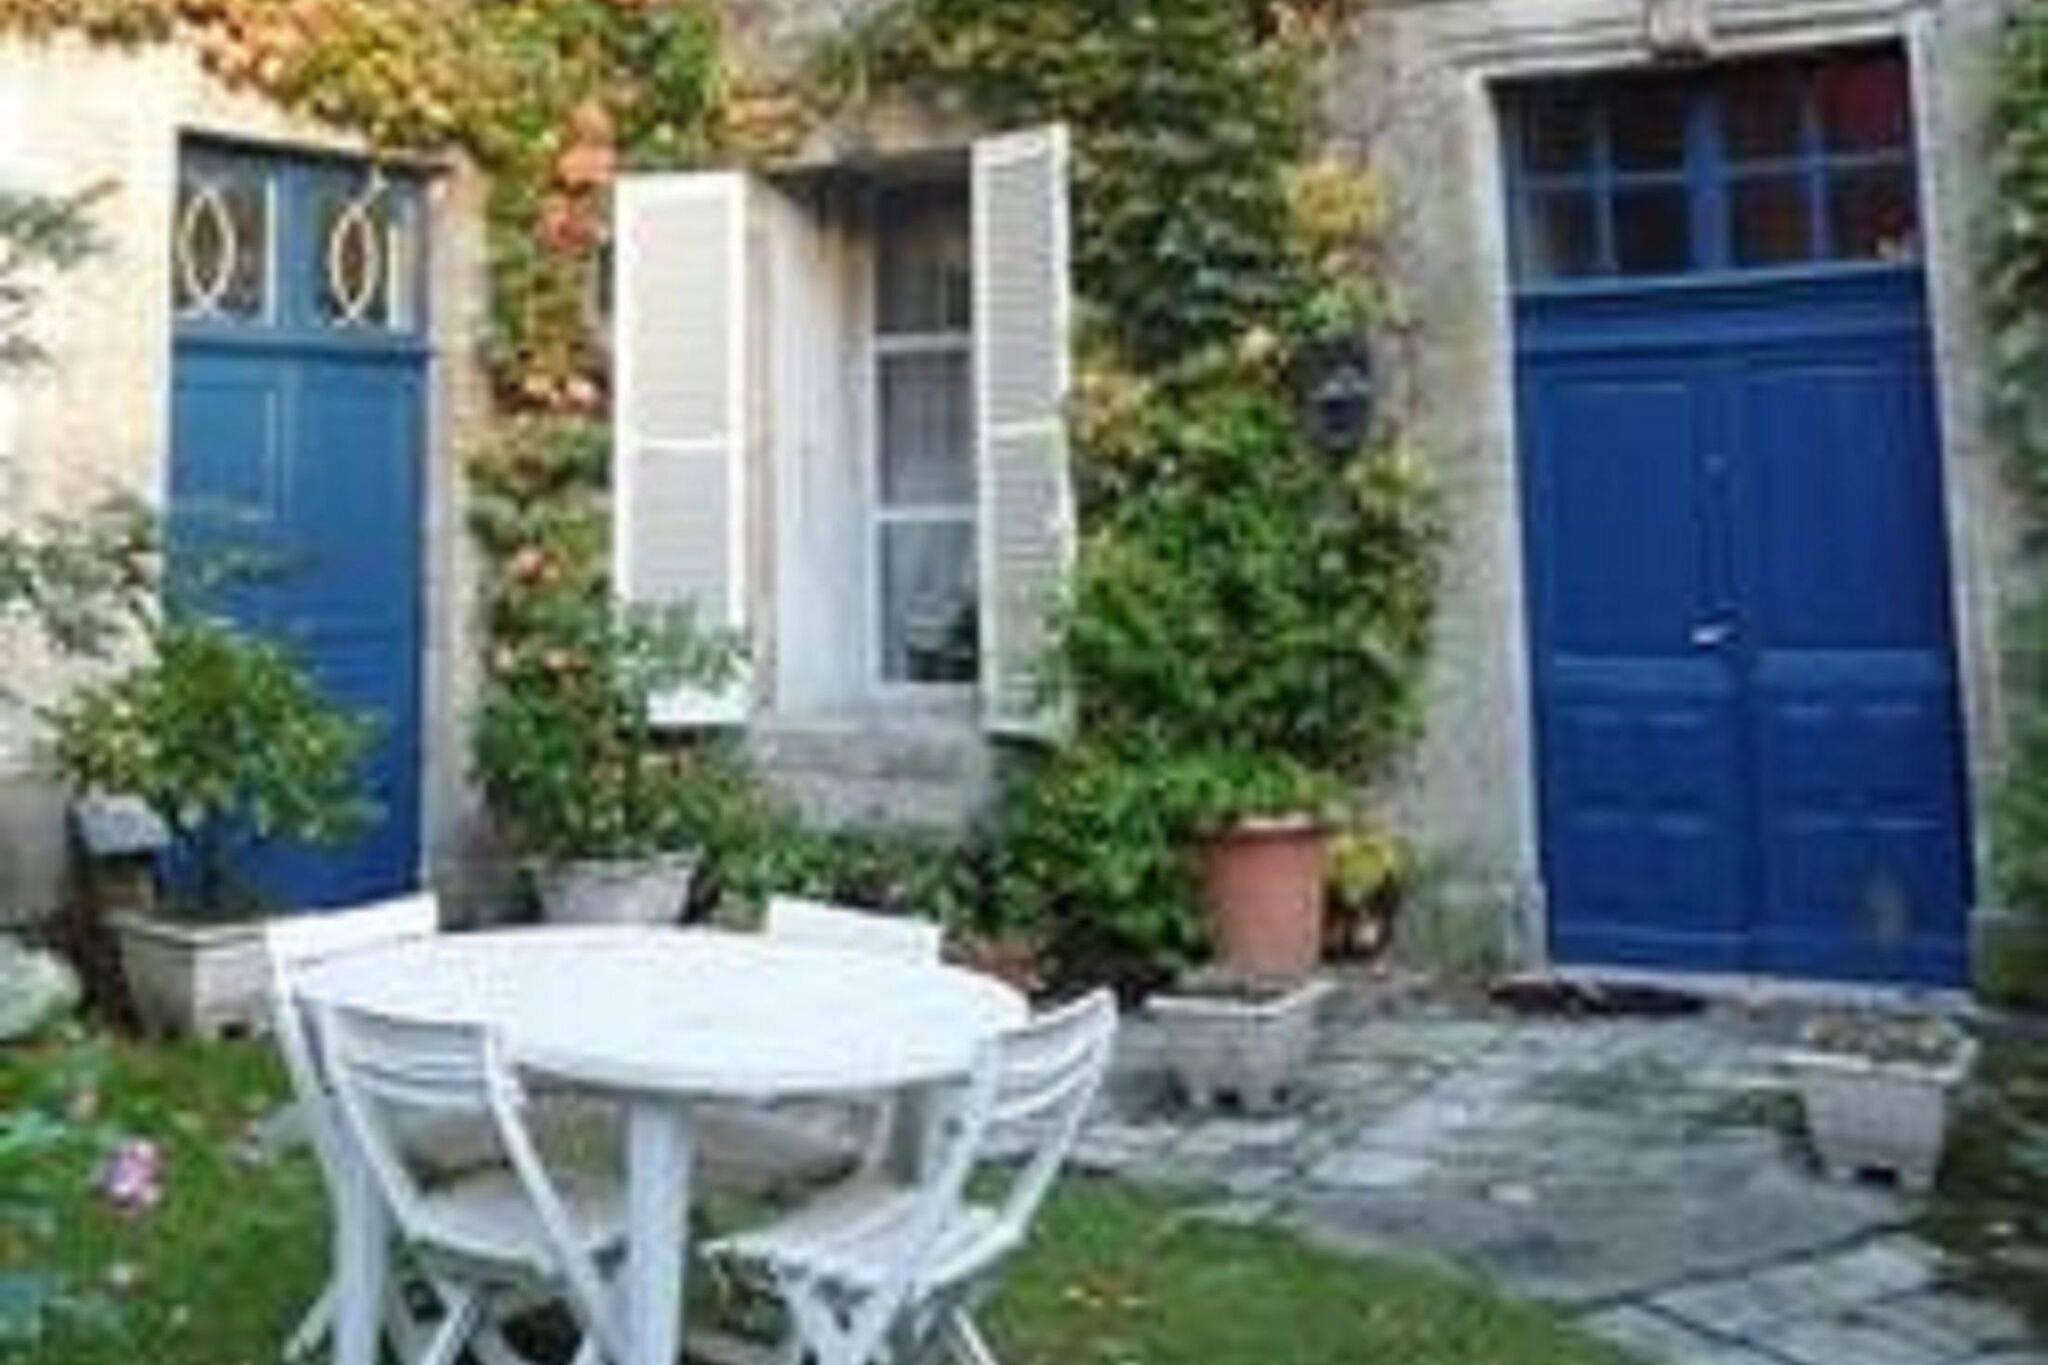 Schöne Wohnung im historischen Zentrum von Bayeux